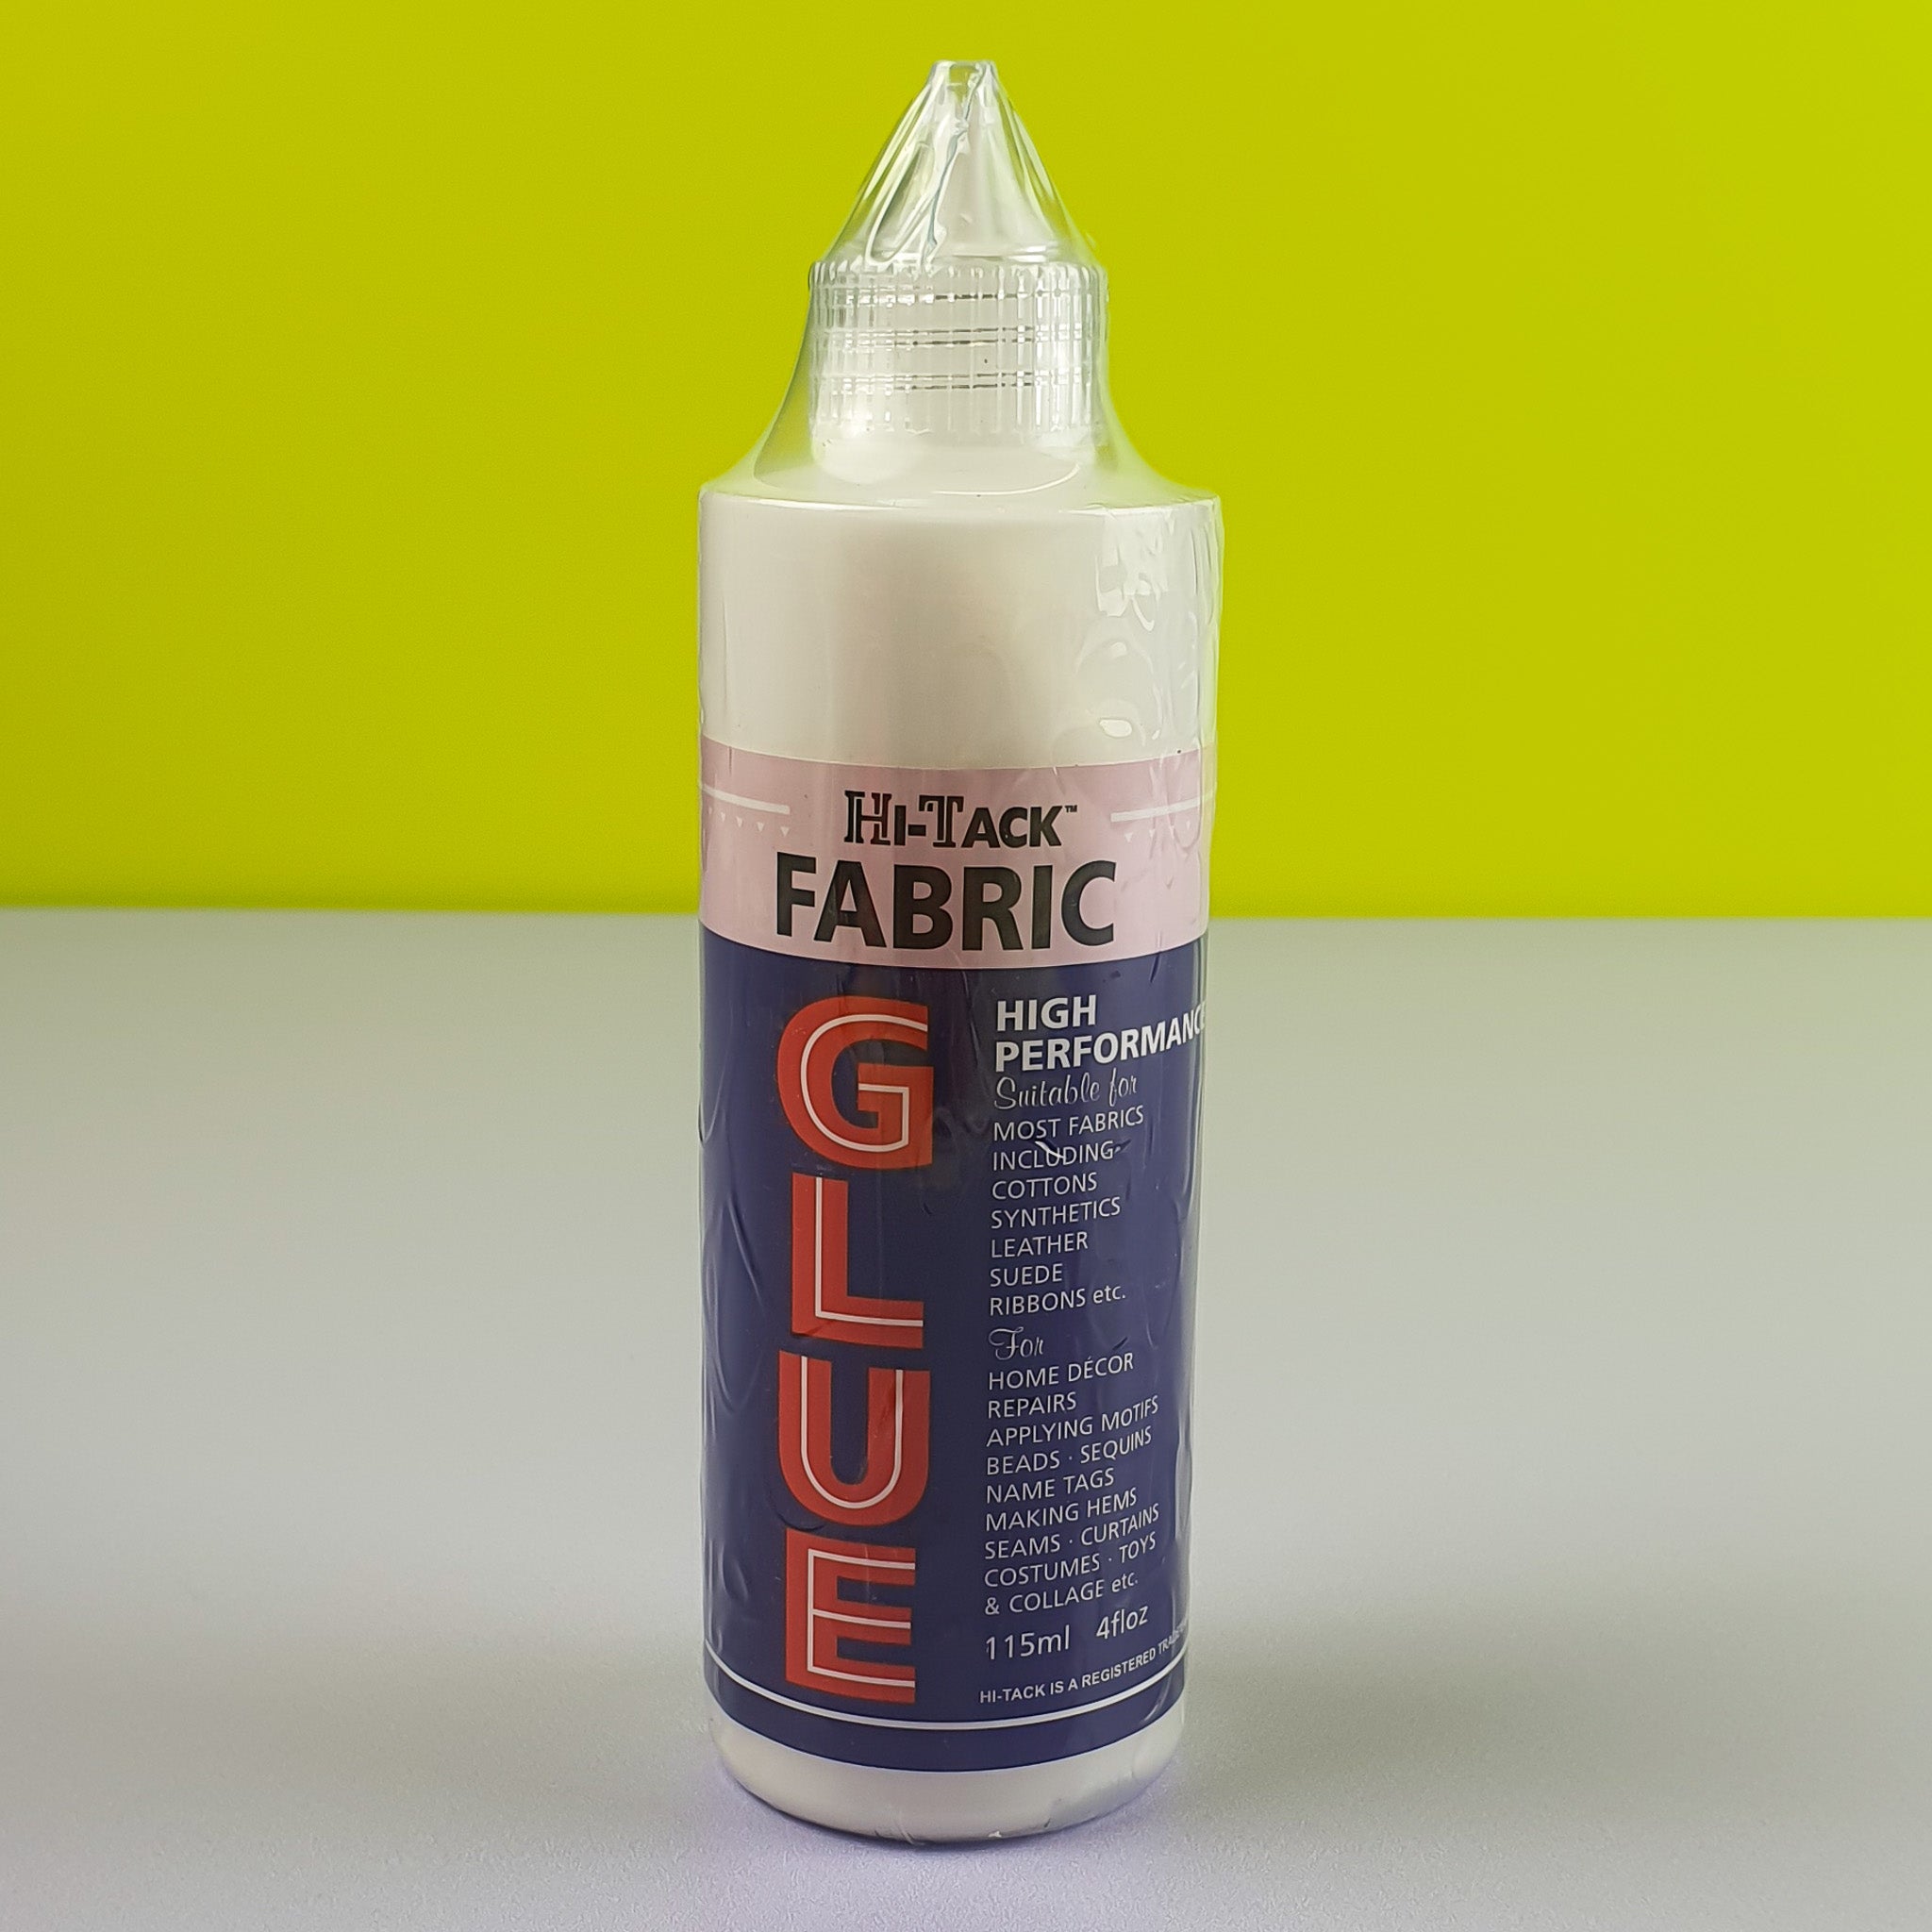 Hi-Tack Fabric Glue Front